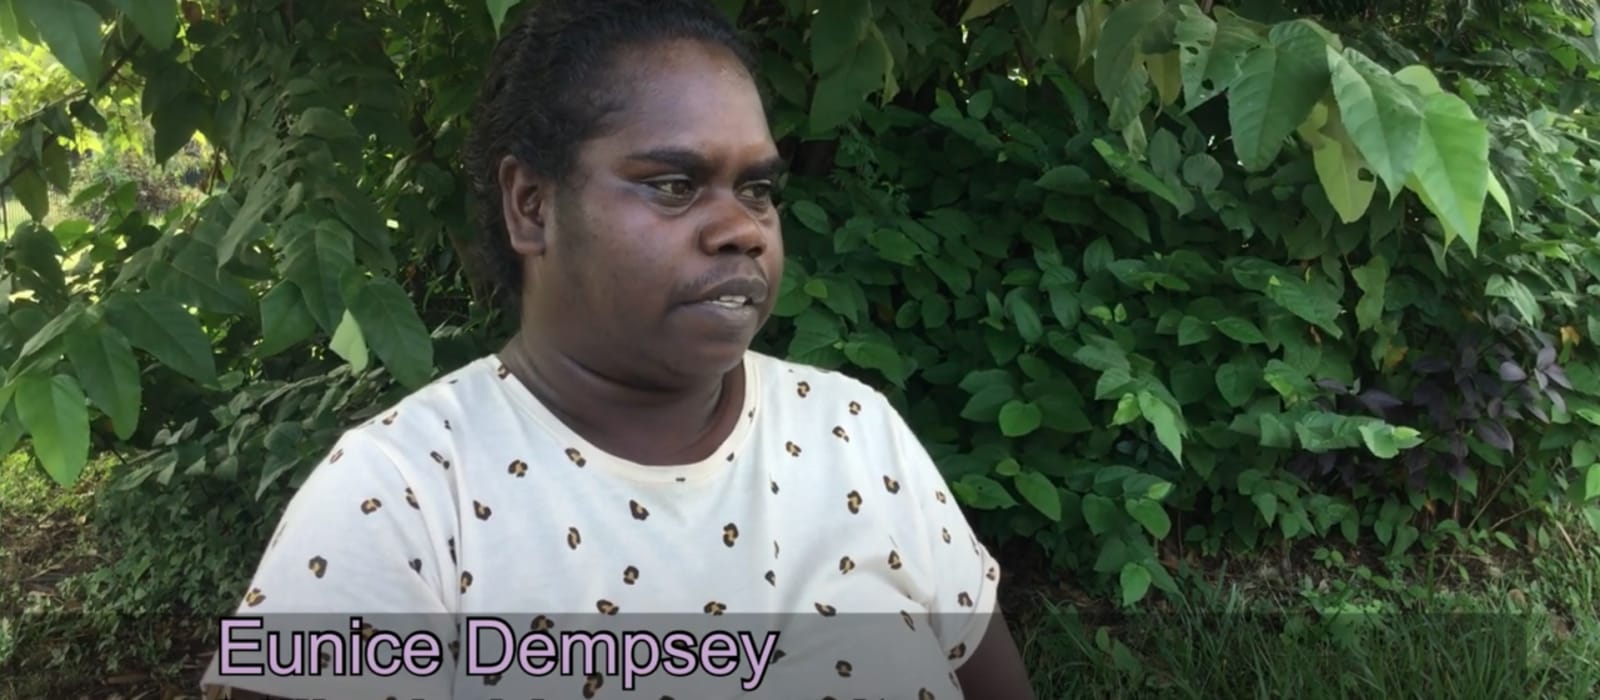 Eunice Dempsey&#39;s story